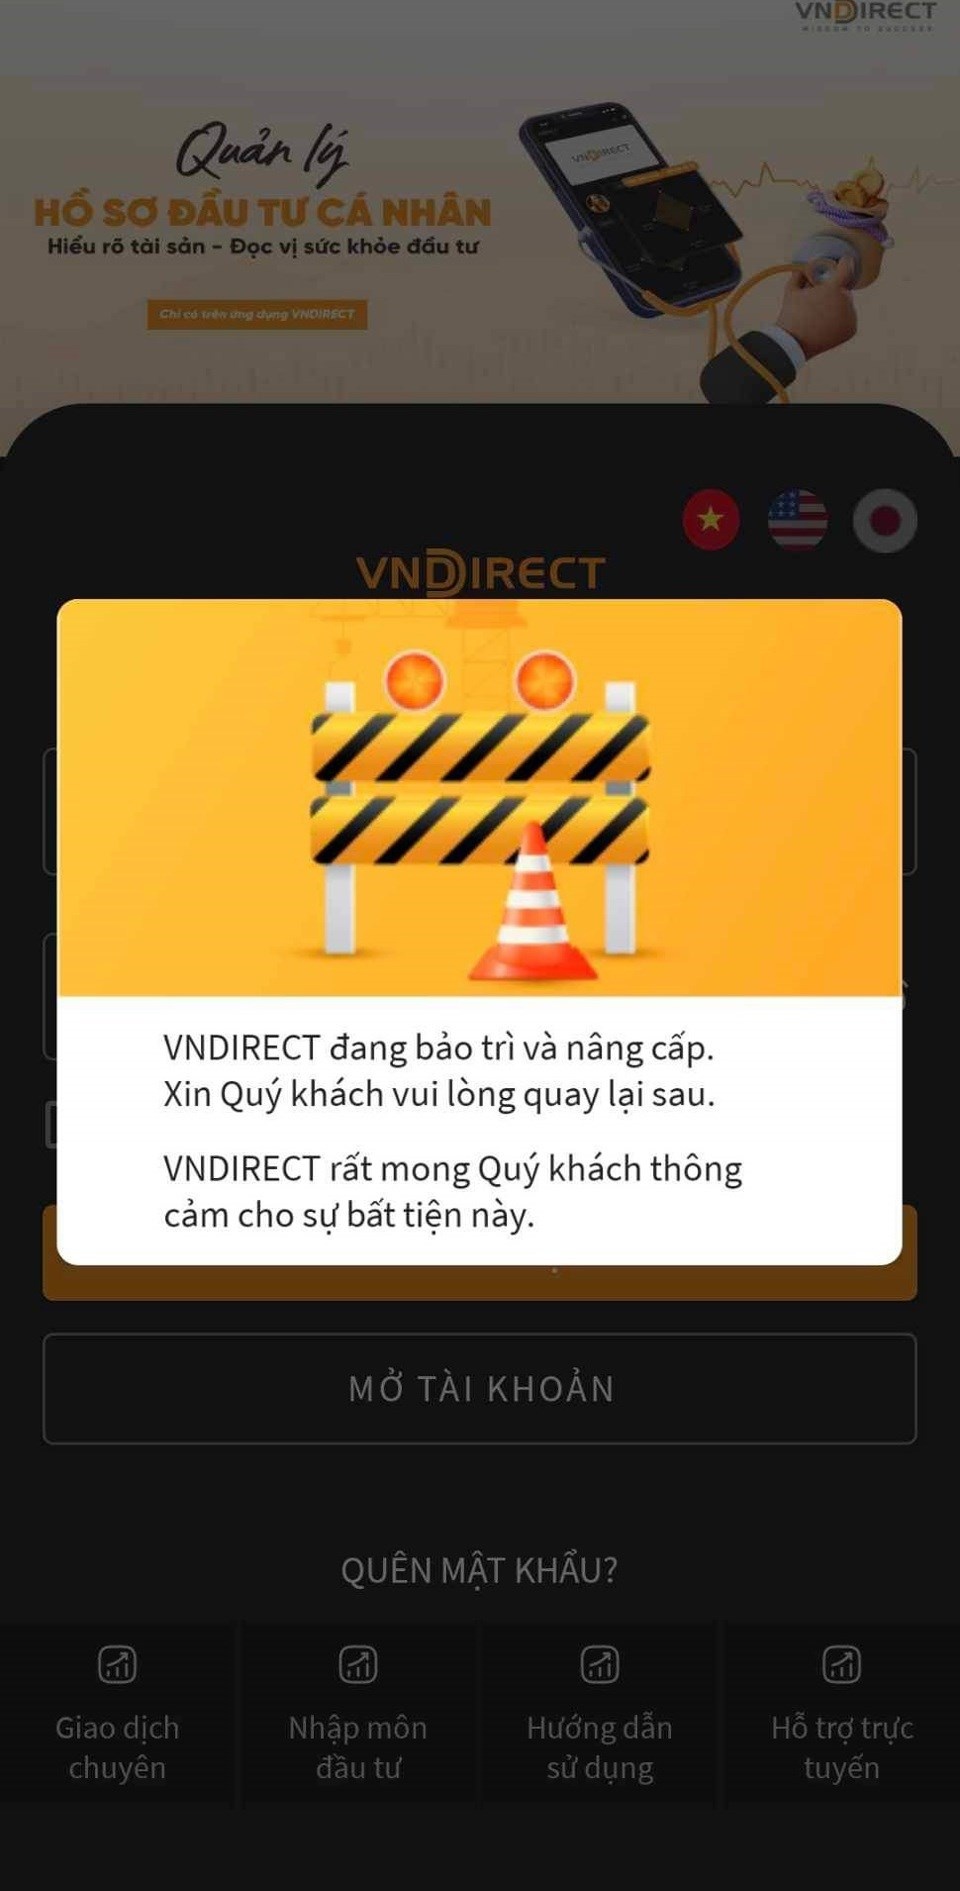 Tạm thời ngắt kết nối giao dịch của VNDirect tới HNX